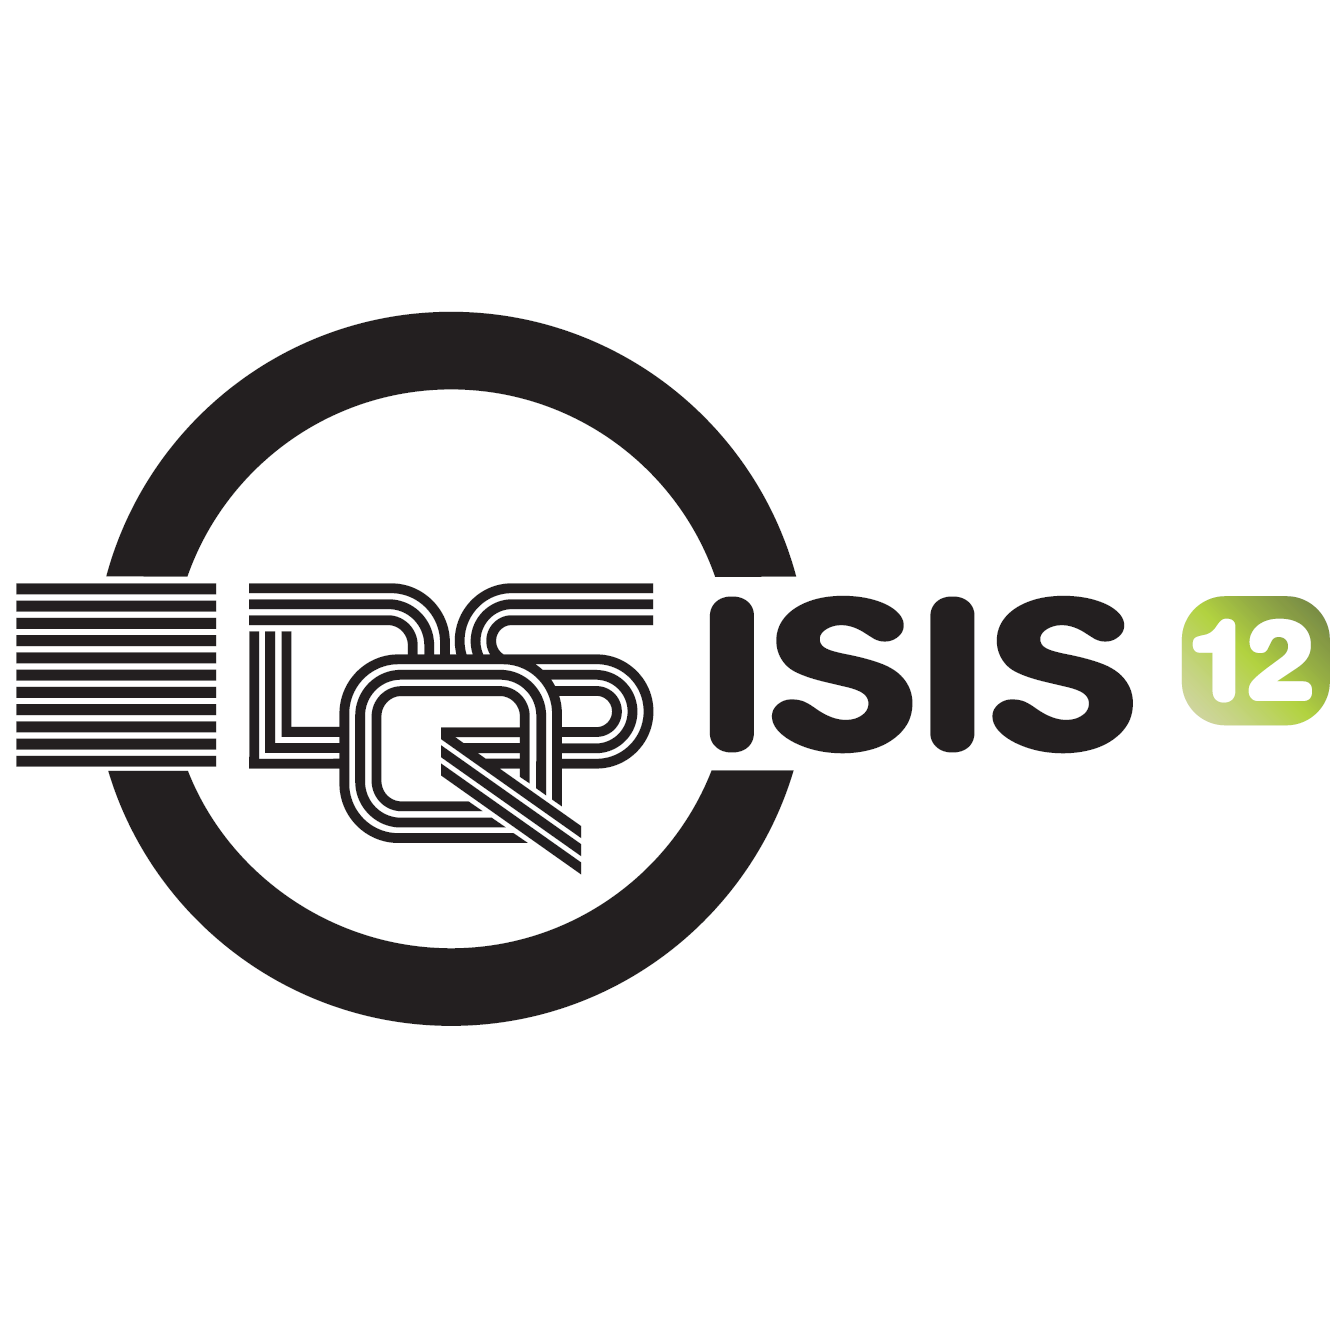 Realsteuerstelle und GIS Service GmbH nach ISIS12 zertifiziert